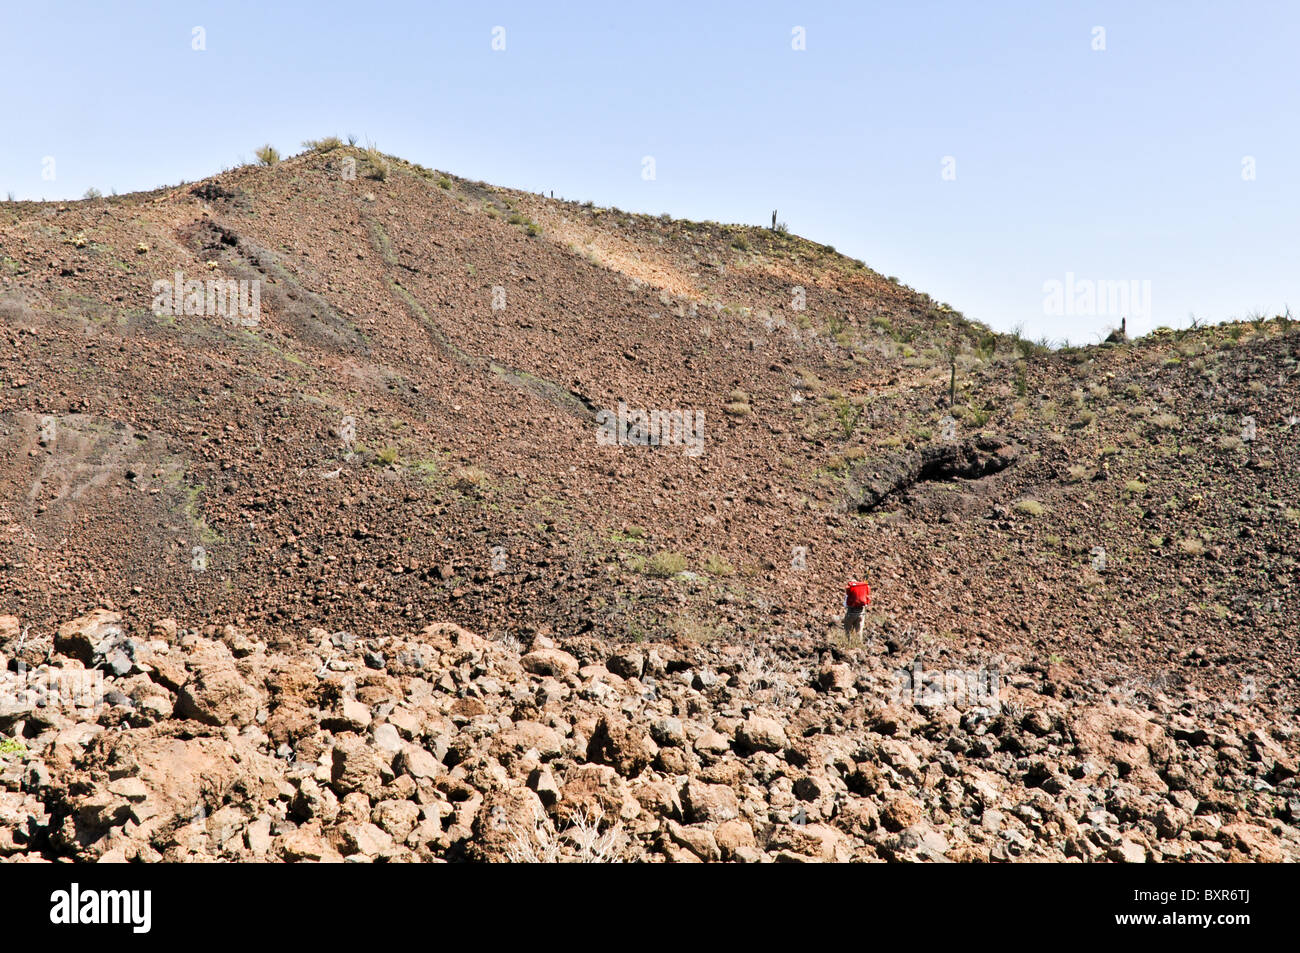 Geologe in Bereich der vulkanische Bomben, Ausgestoßene Magma die gekühlt beim fallen, El Pinacate Biosphärenreservat, Sonora, Mexiko Stockfoto